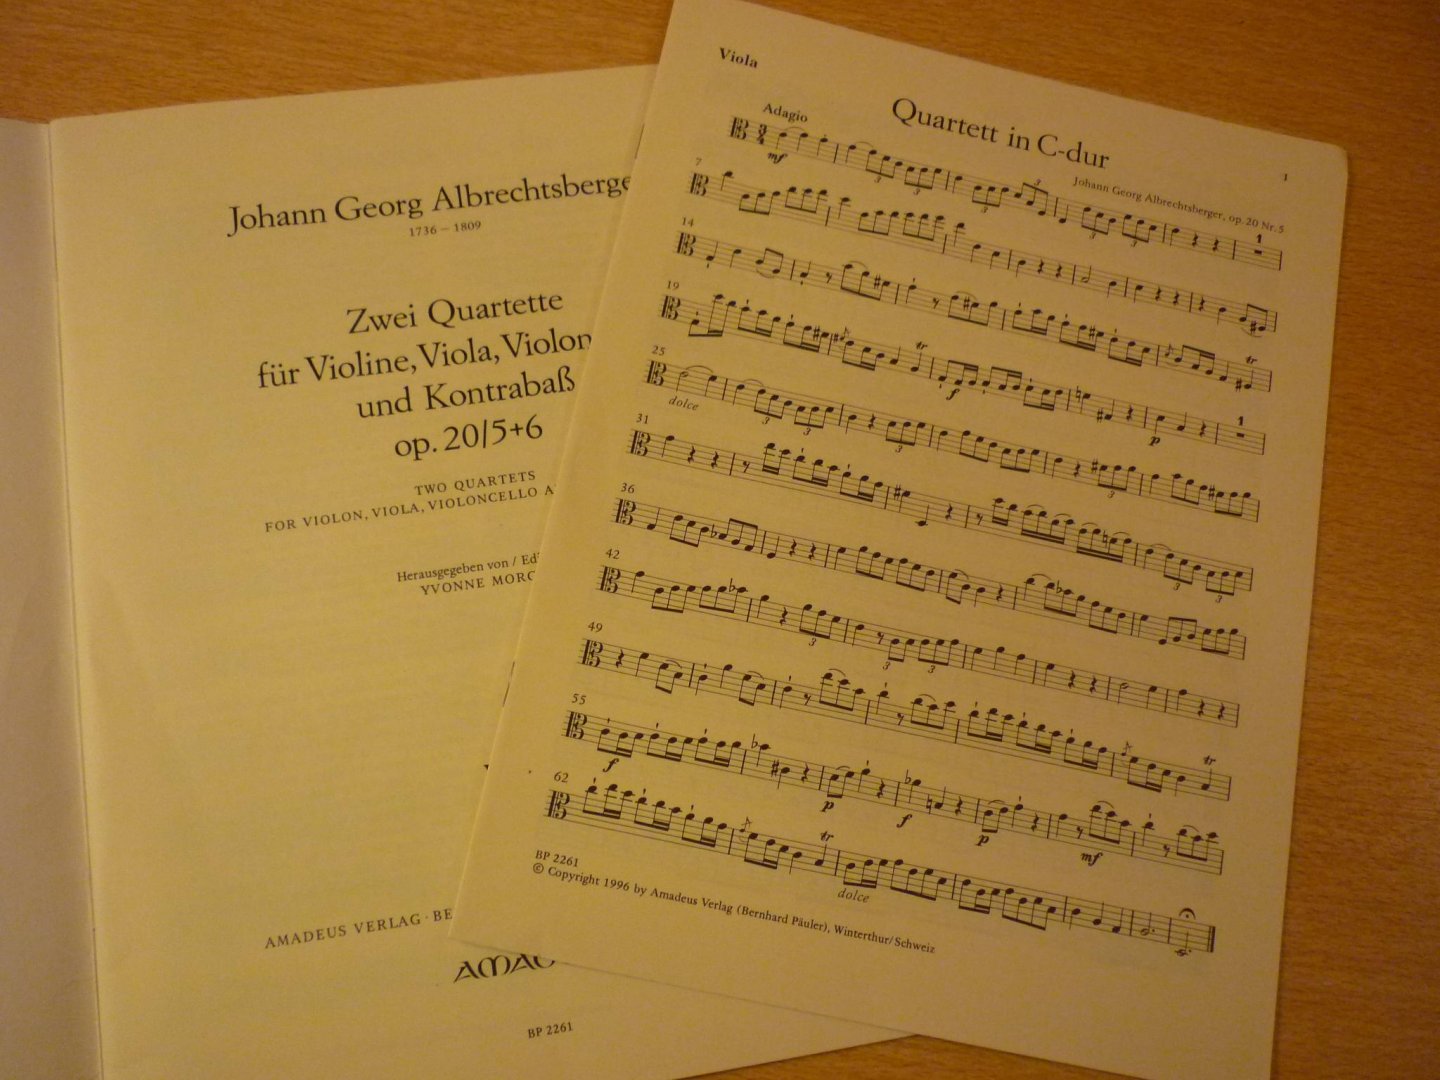 Albrechtsberger; Johann Georg (1736–1809) - 2 Quartette; Op. 20/5+6; fur Violine, Viola, Violoncello und Contrabass (herausgegeben von Yvonne Morgan)